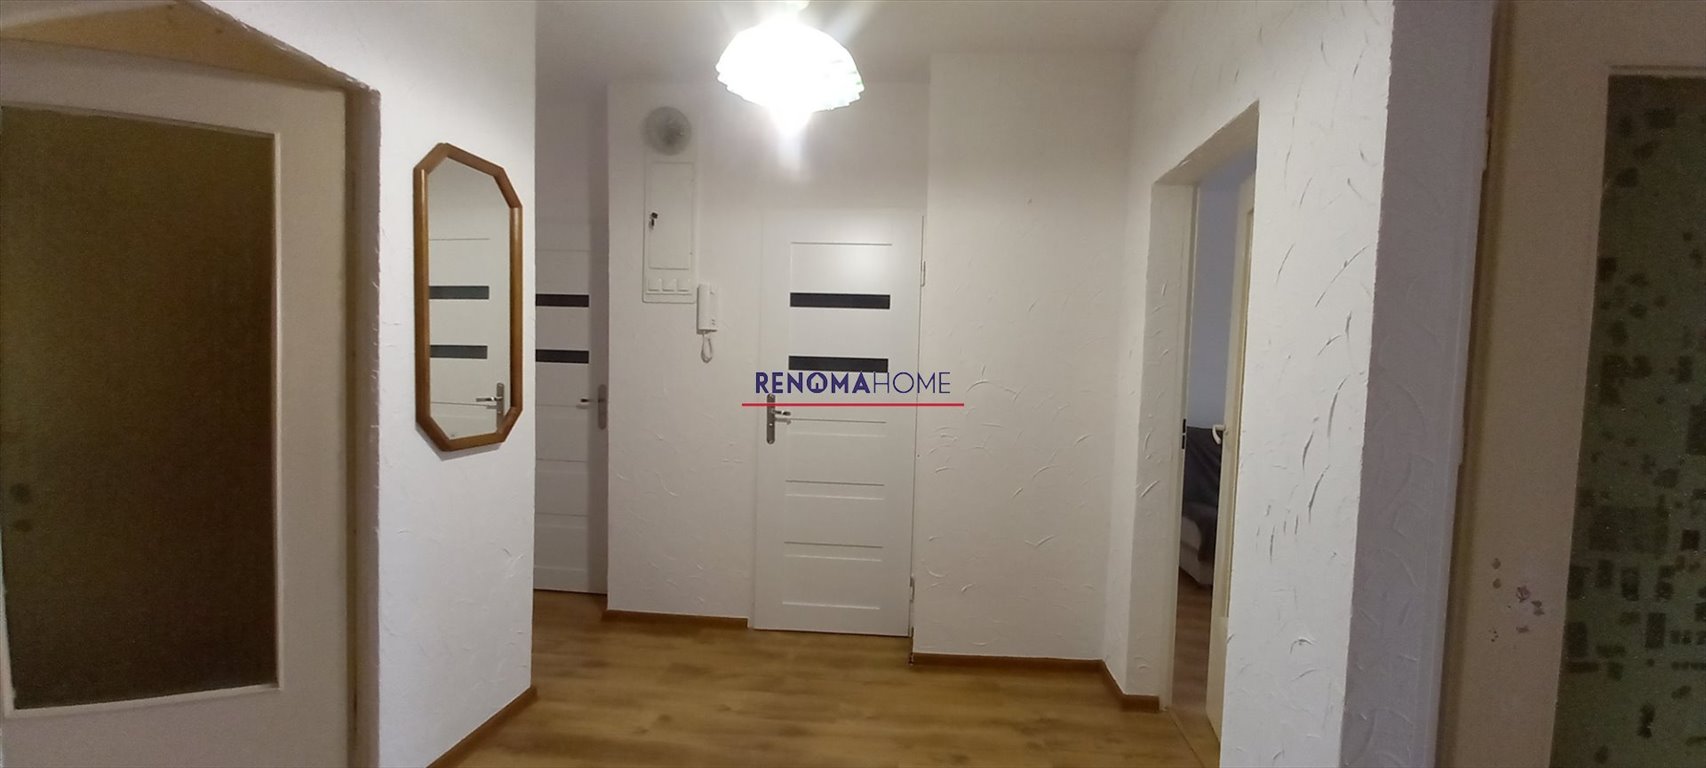 Mieszkanie trzypokojowe na sprzedaż Legnica  65m2 Foto 6